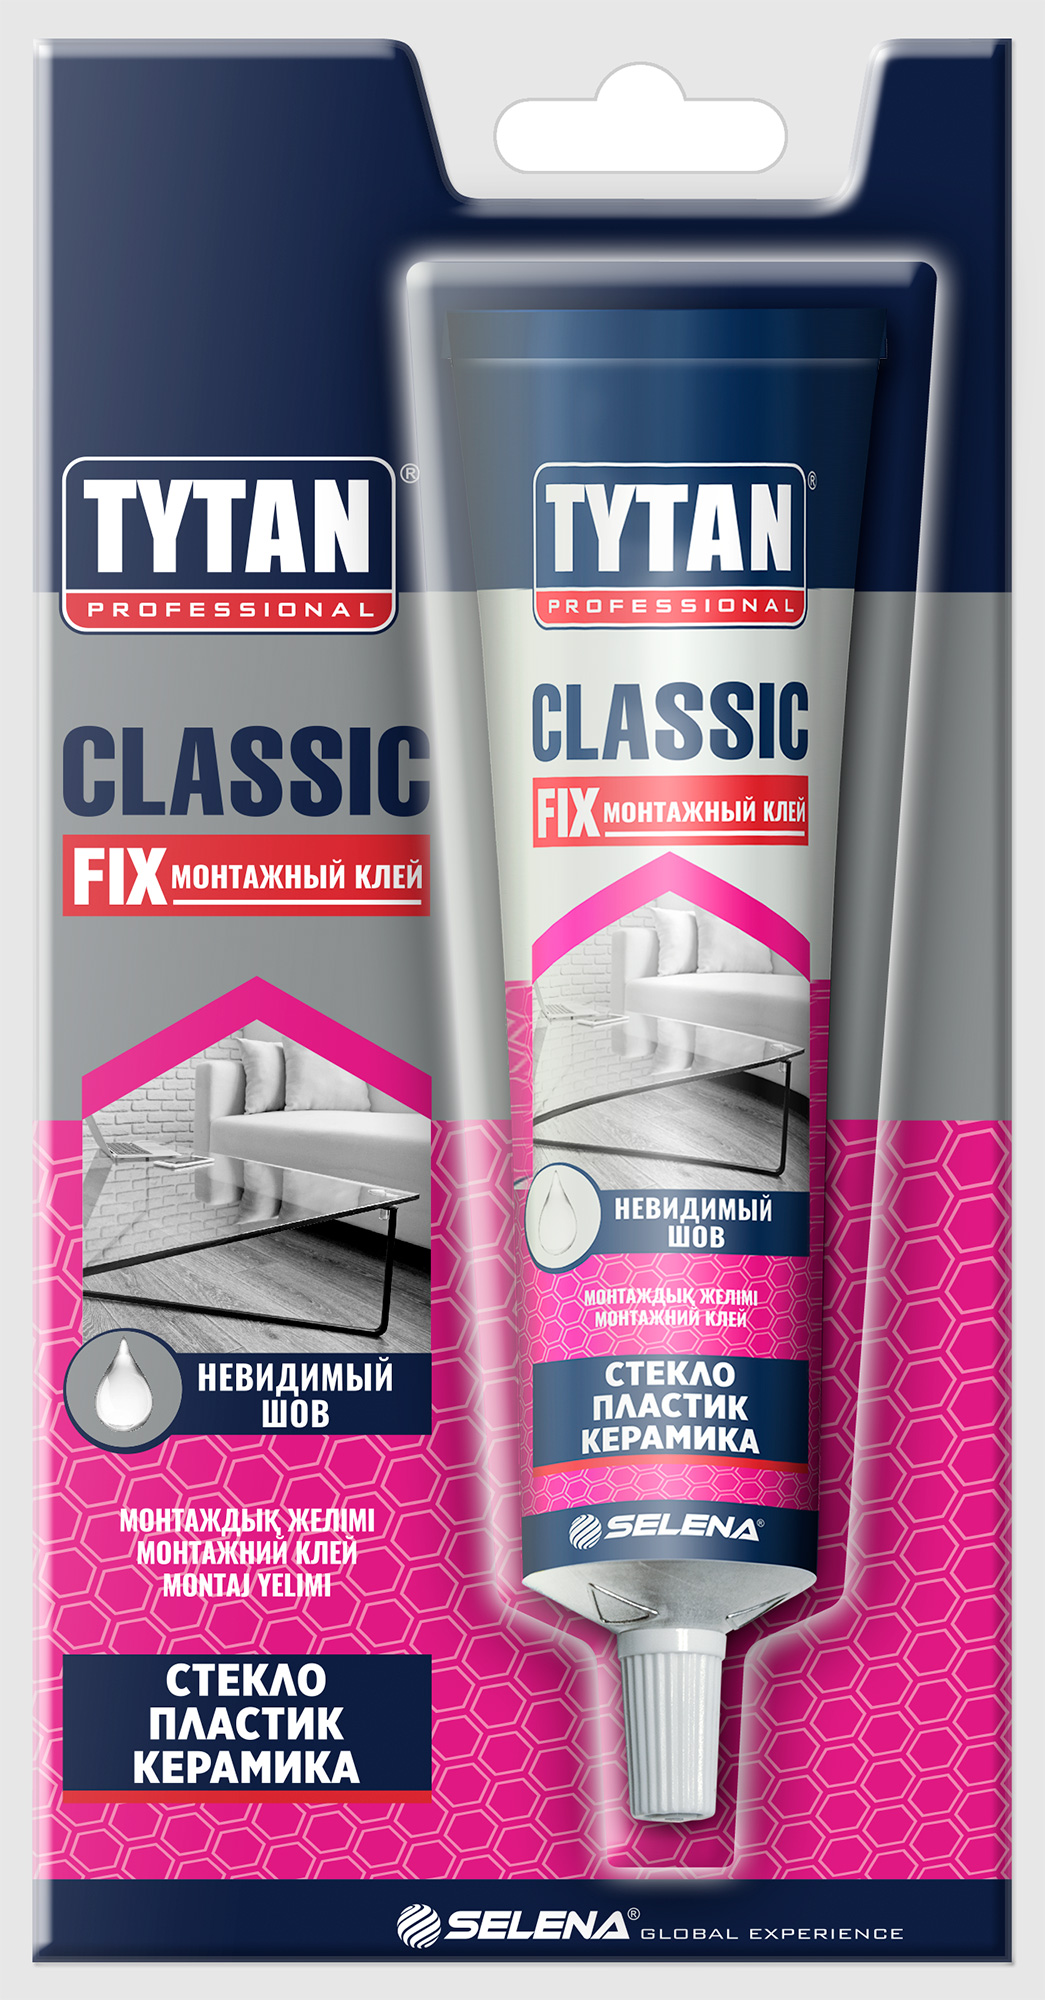 Tytan fix прозрачный. Клей Tytan Classic Fix. Клей Tytan quick Fix. Tytan professional Classic Fix. Tytan Classic Fix монтажный клей.